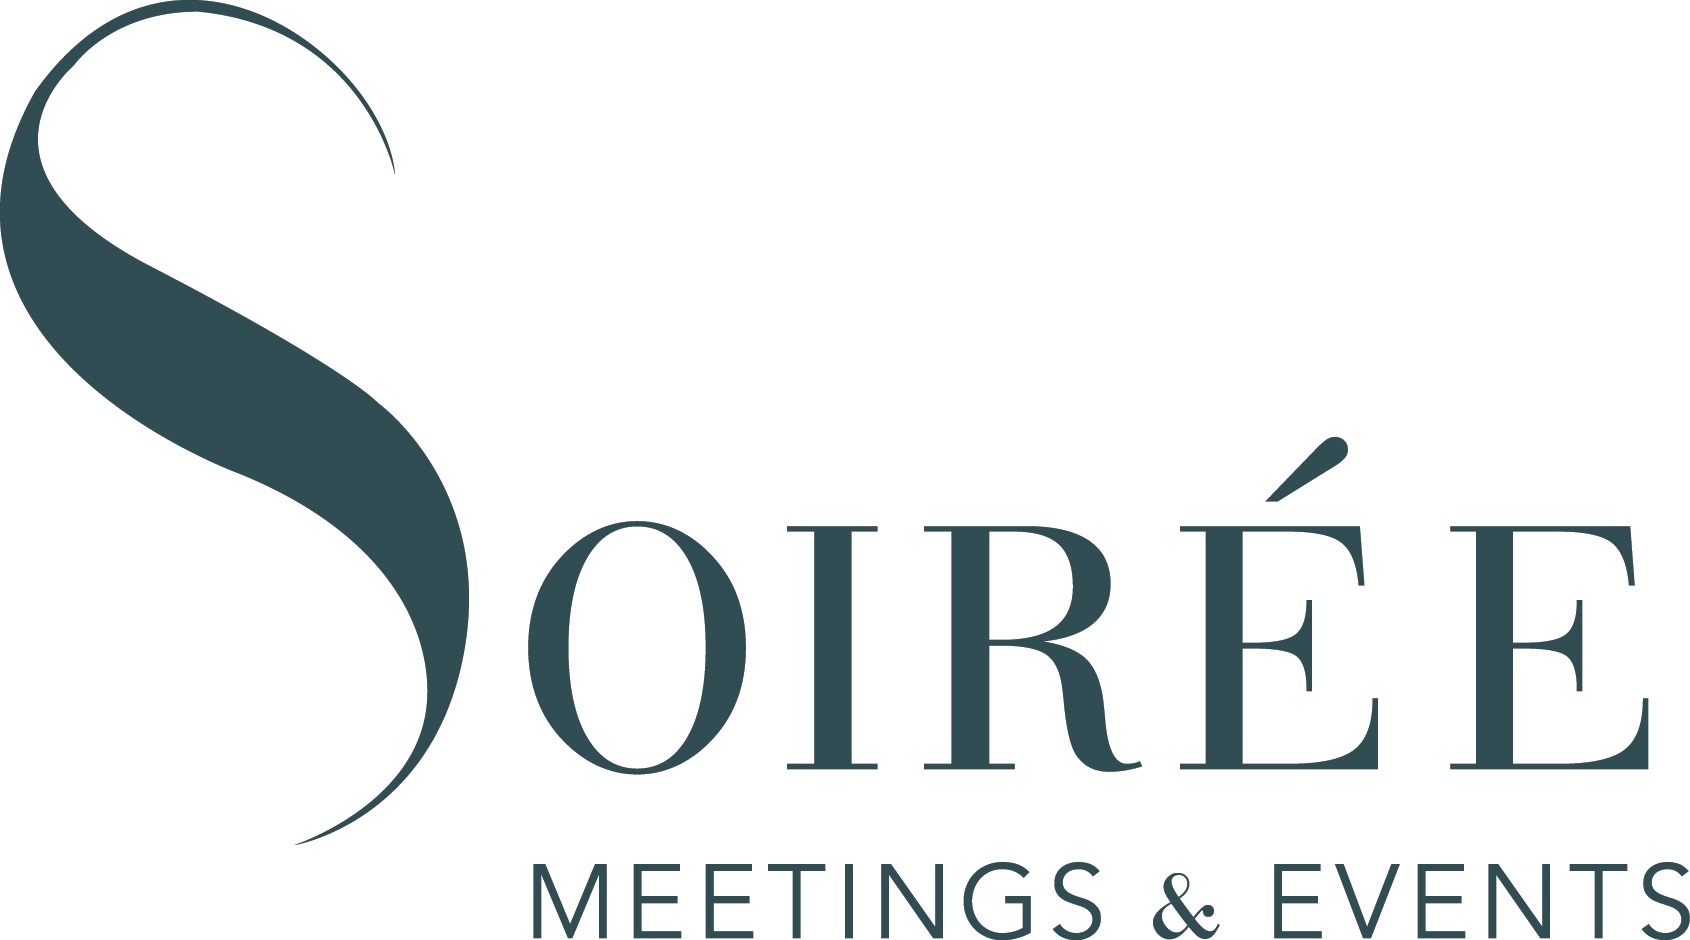 Soiree Meetings & Events